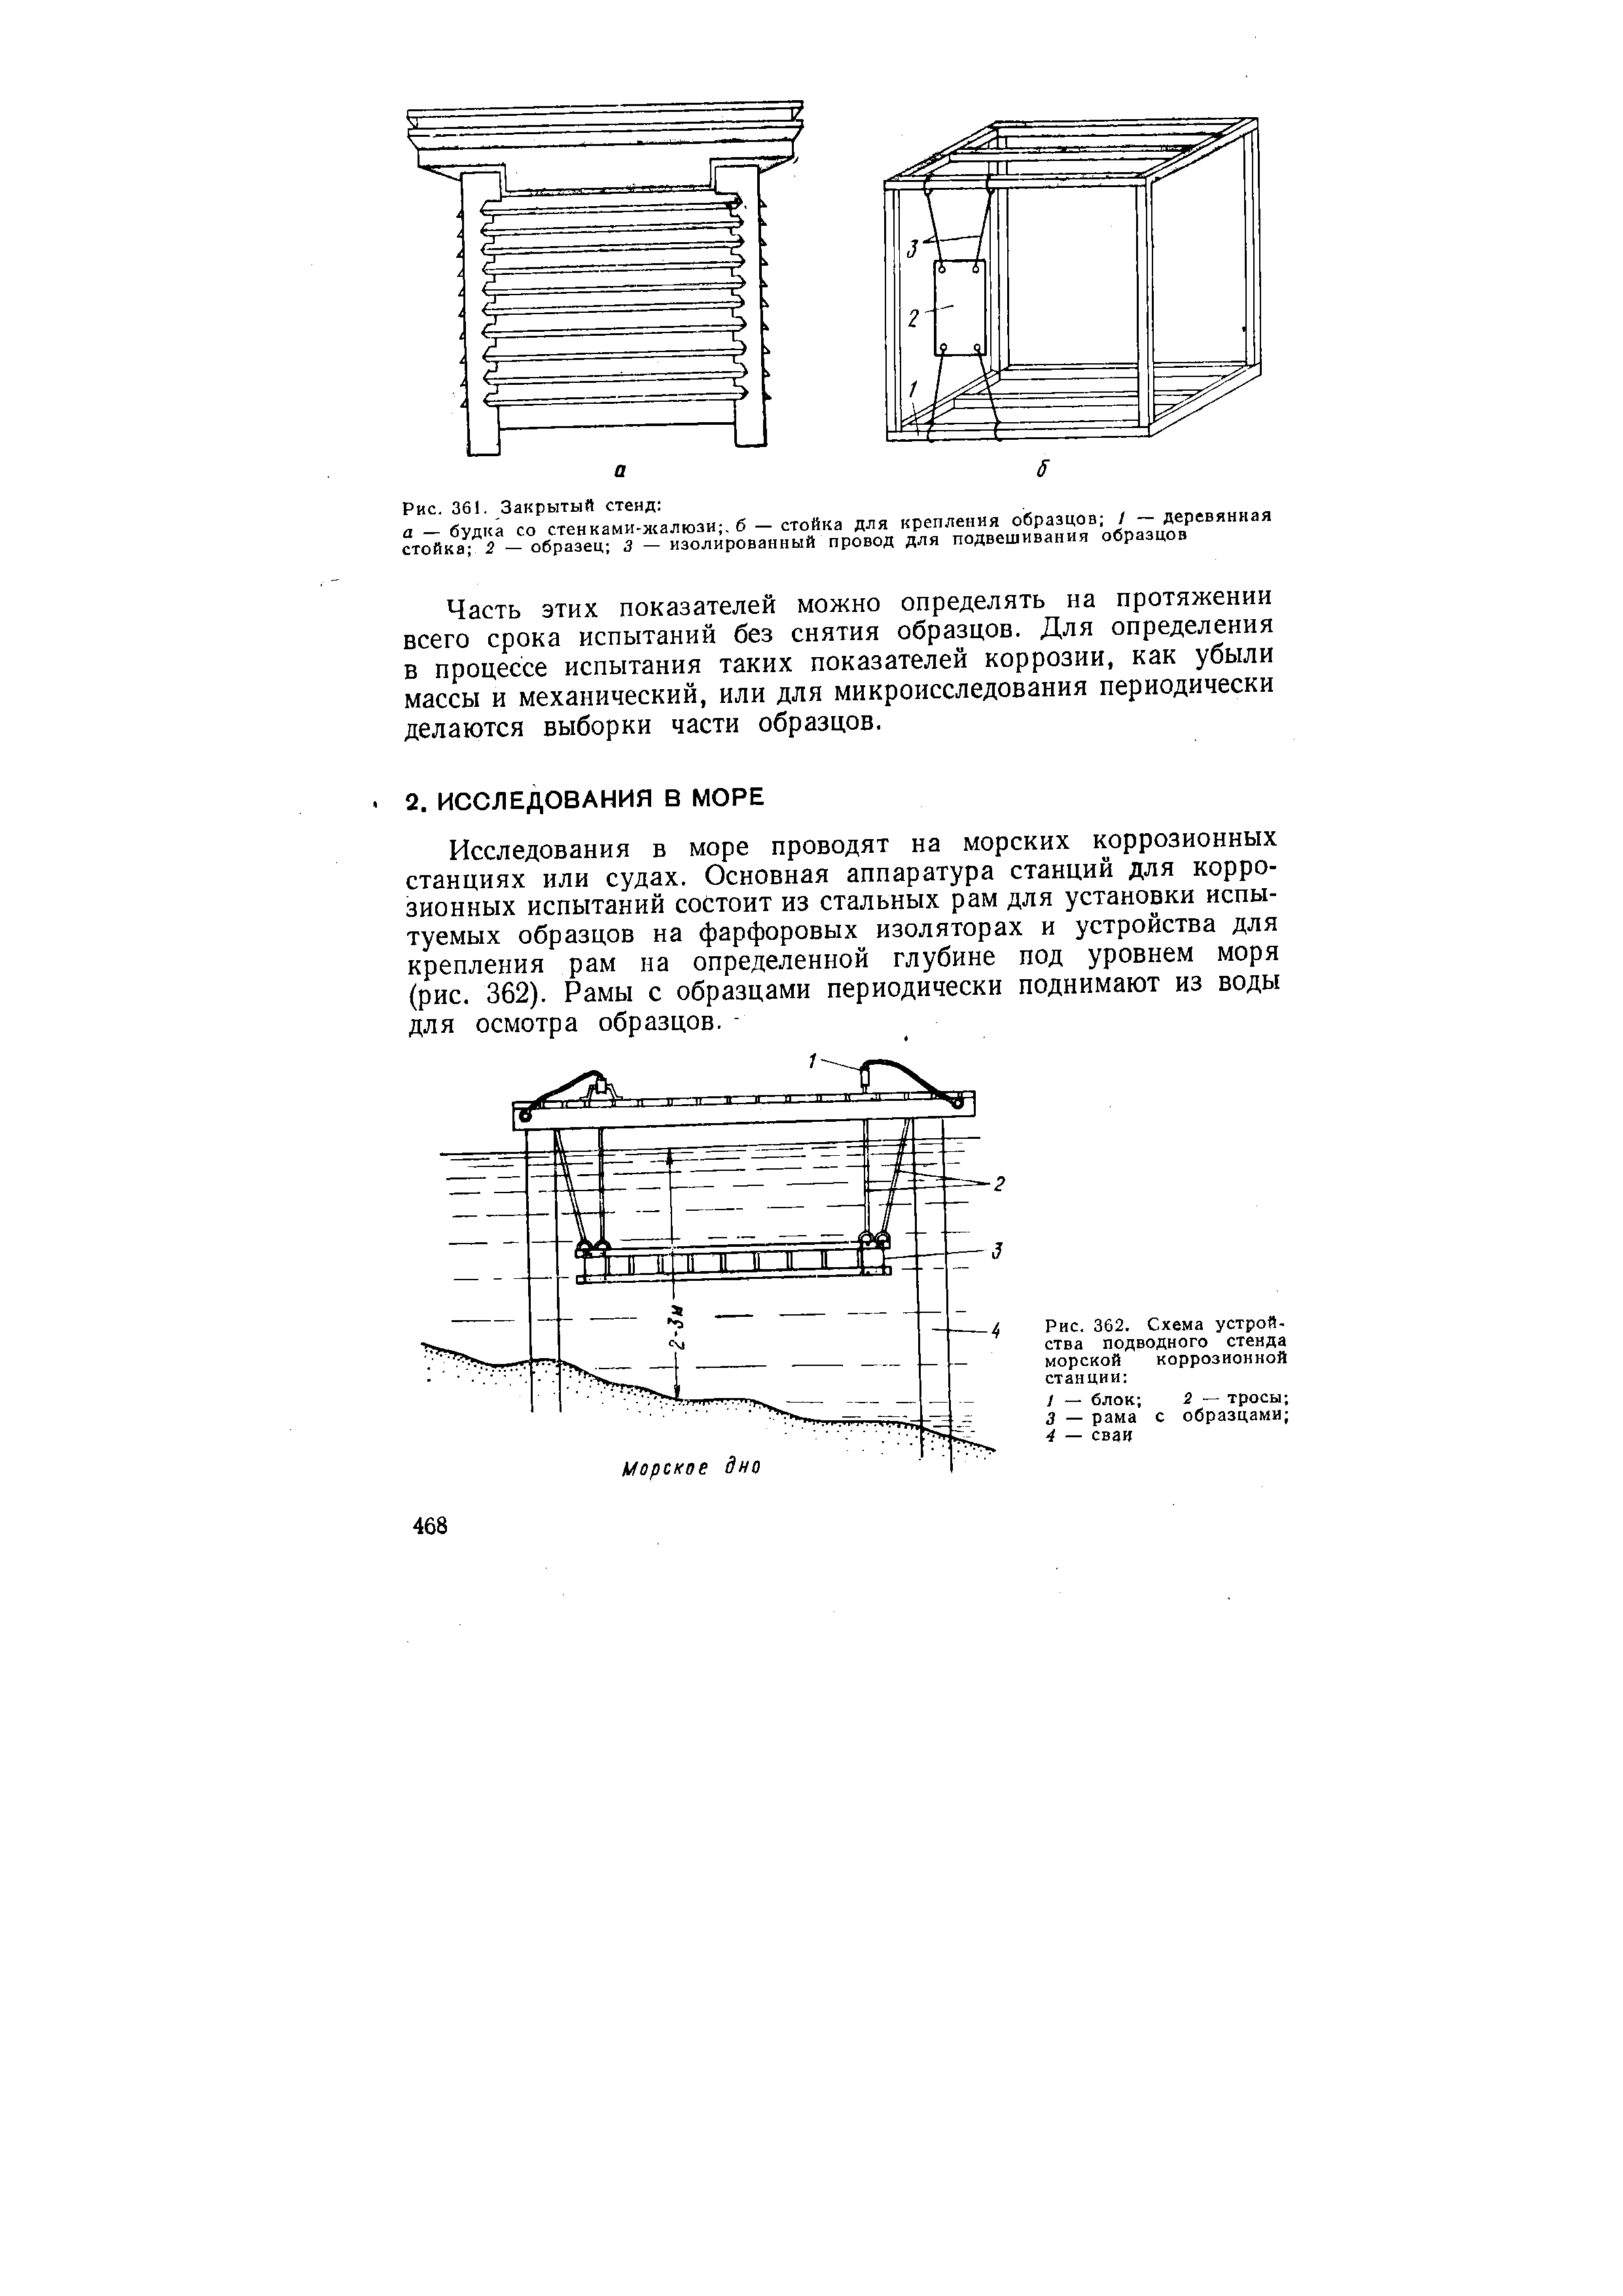 Рис. 362, Схема устройства подводного стенда морской коррозионной станции 
